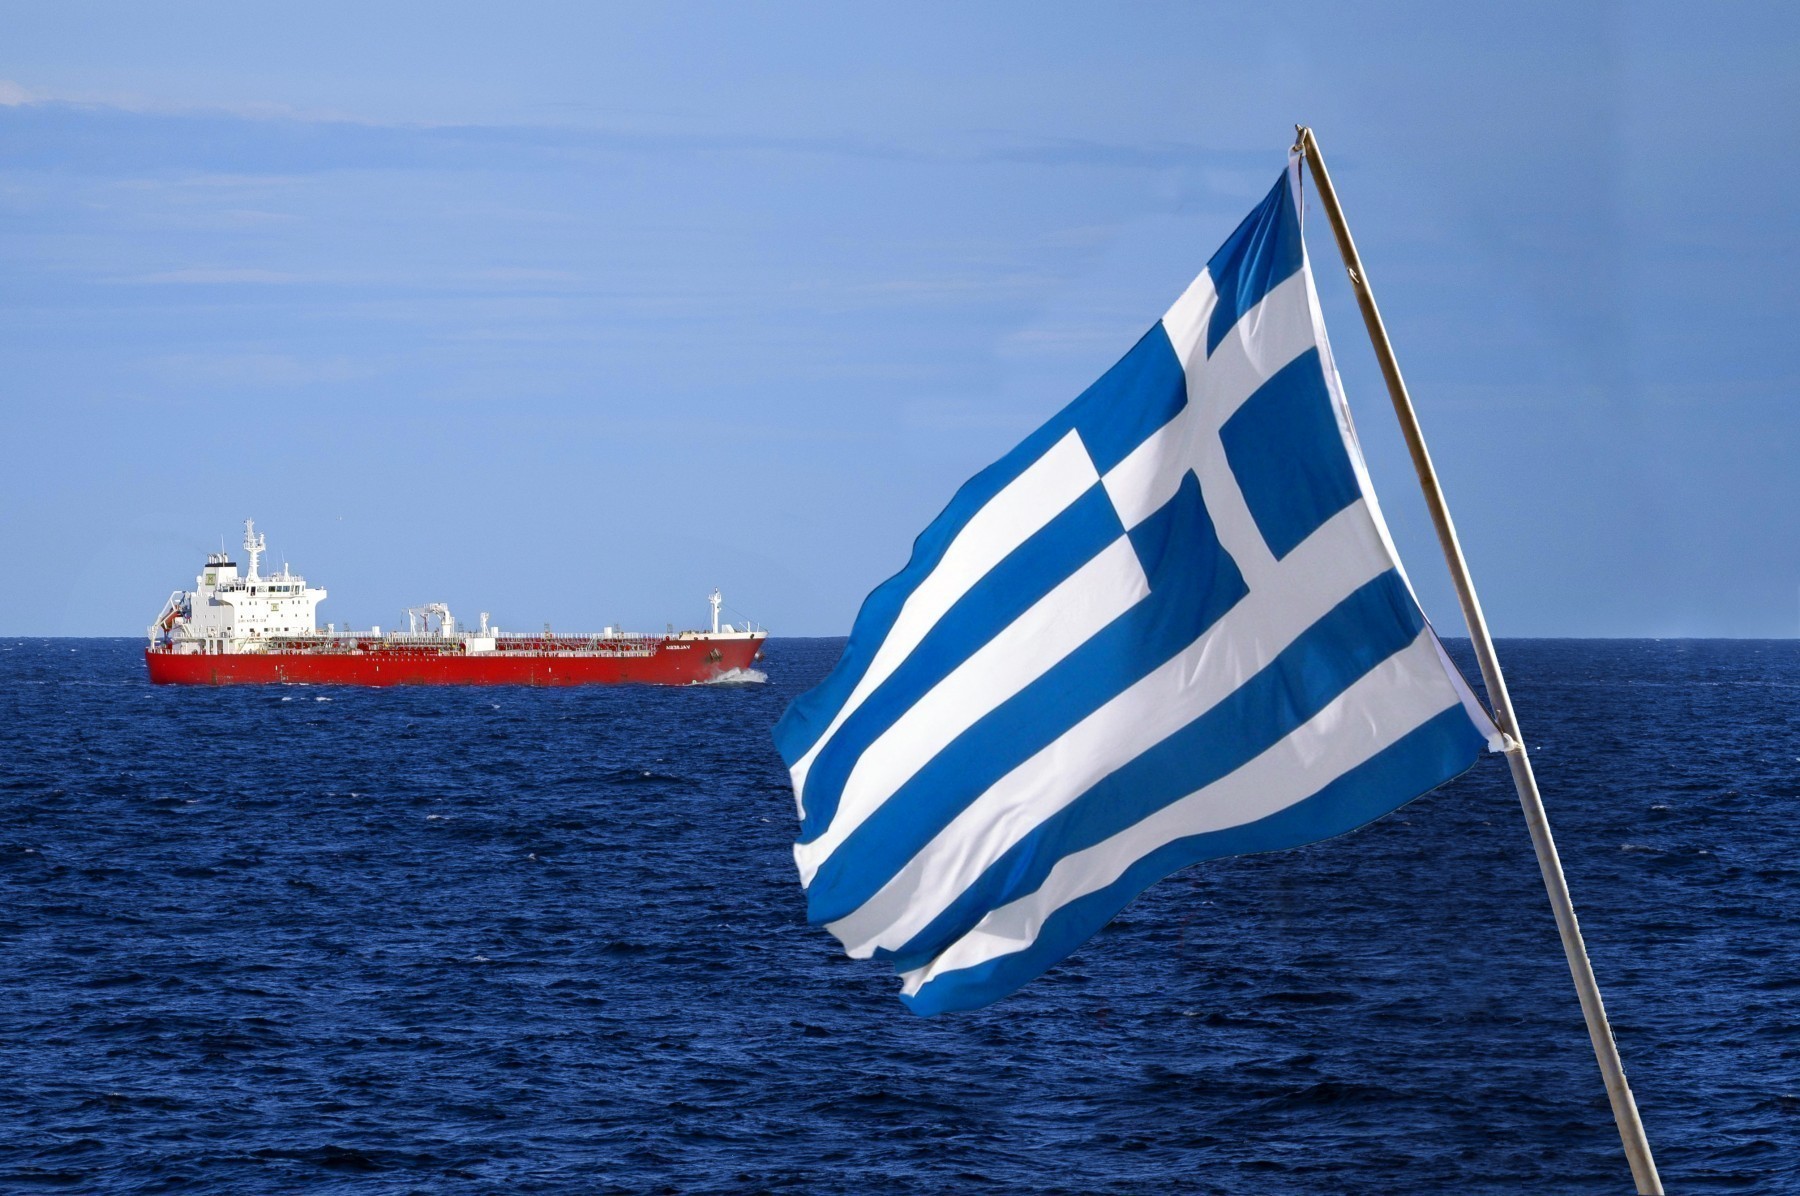 Οι Έλληνες εφοπλιστές συνεχίζουν να μην επιλέγουν το ελληνικό νηολόγιο